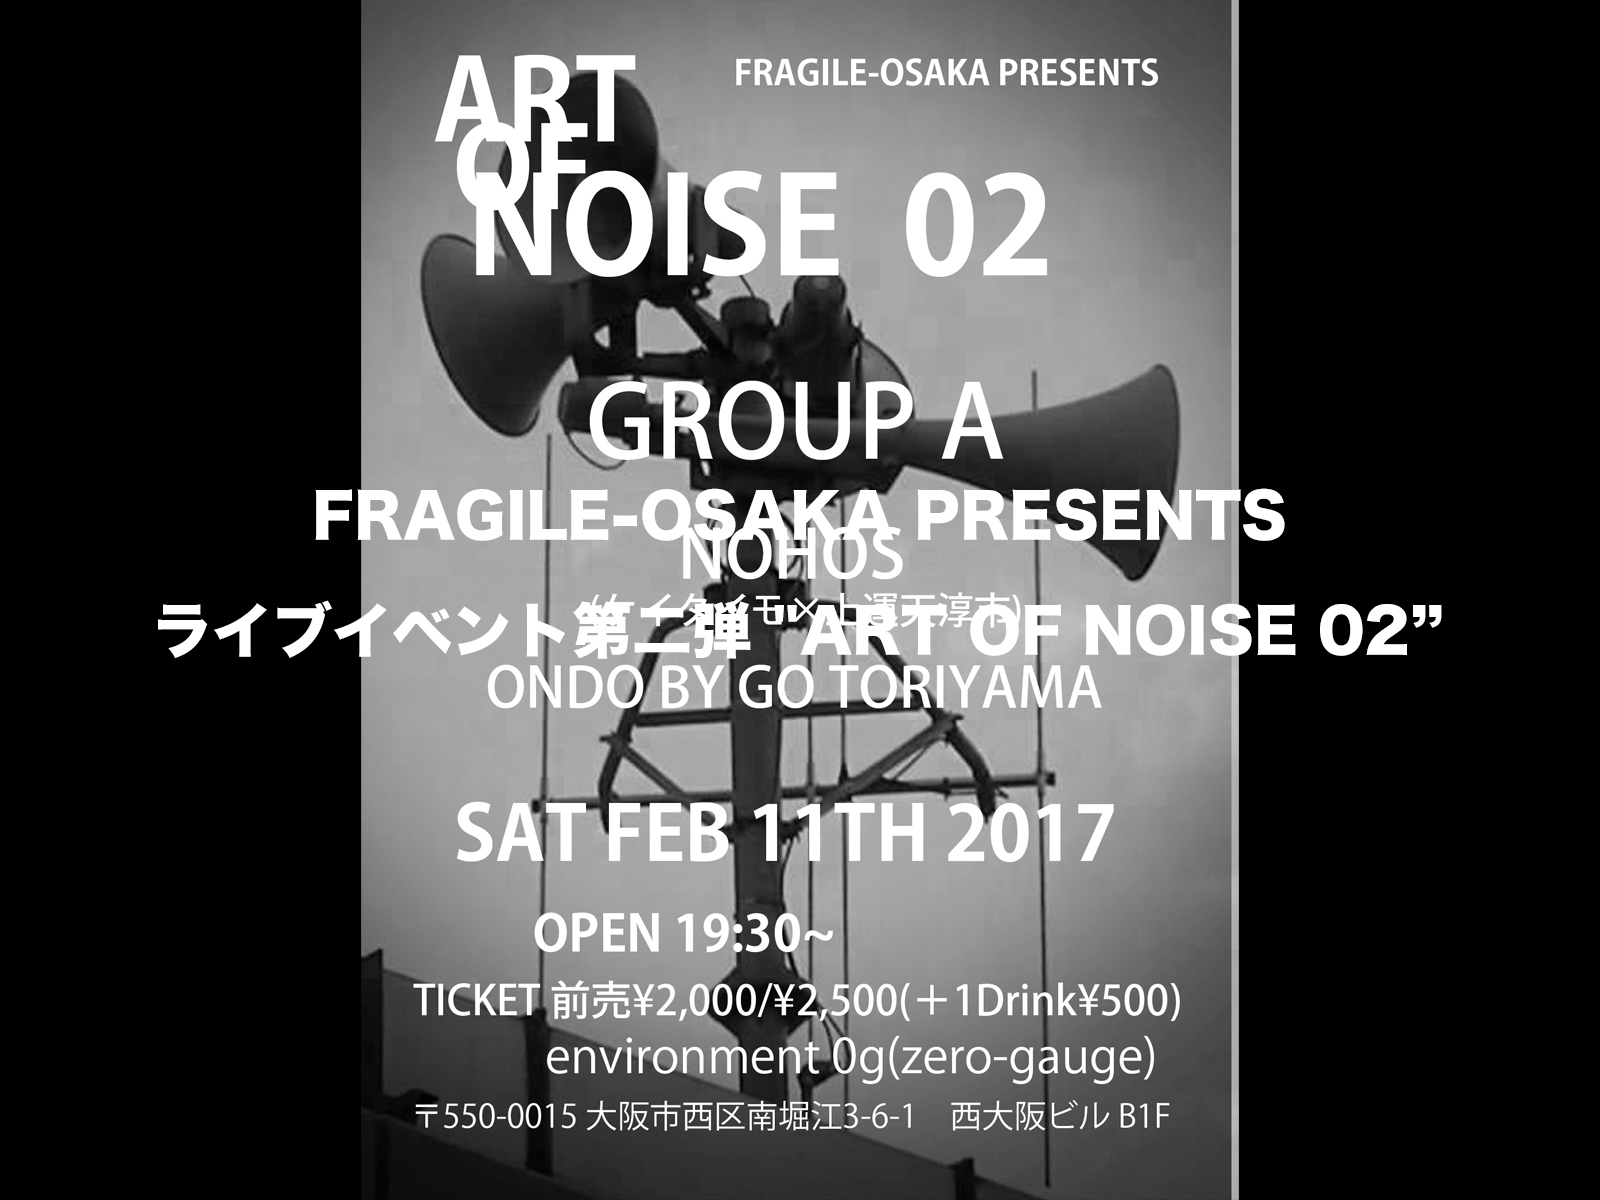 FRAGILE-OSAKA PRESENTS ライブイベント第二弾 ART OF NOISE 02 / 2月11日 開催！！